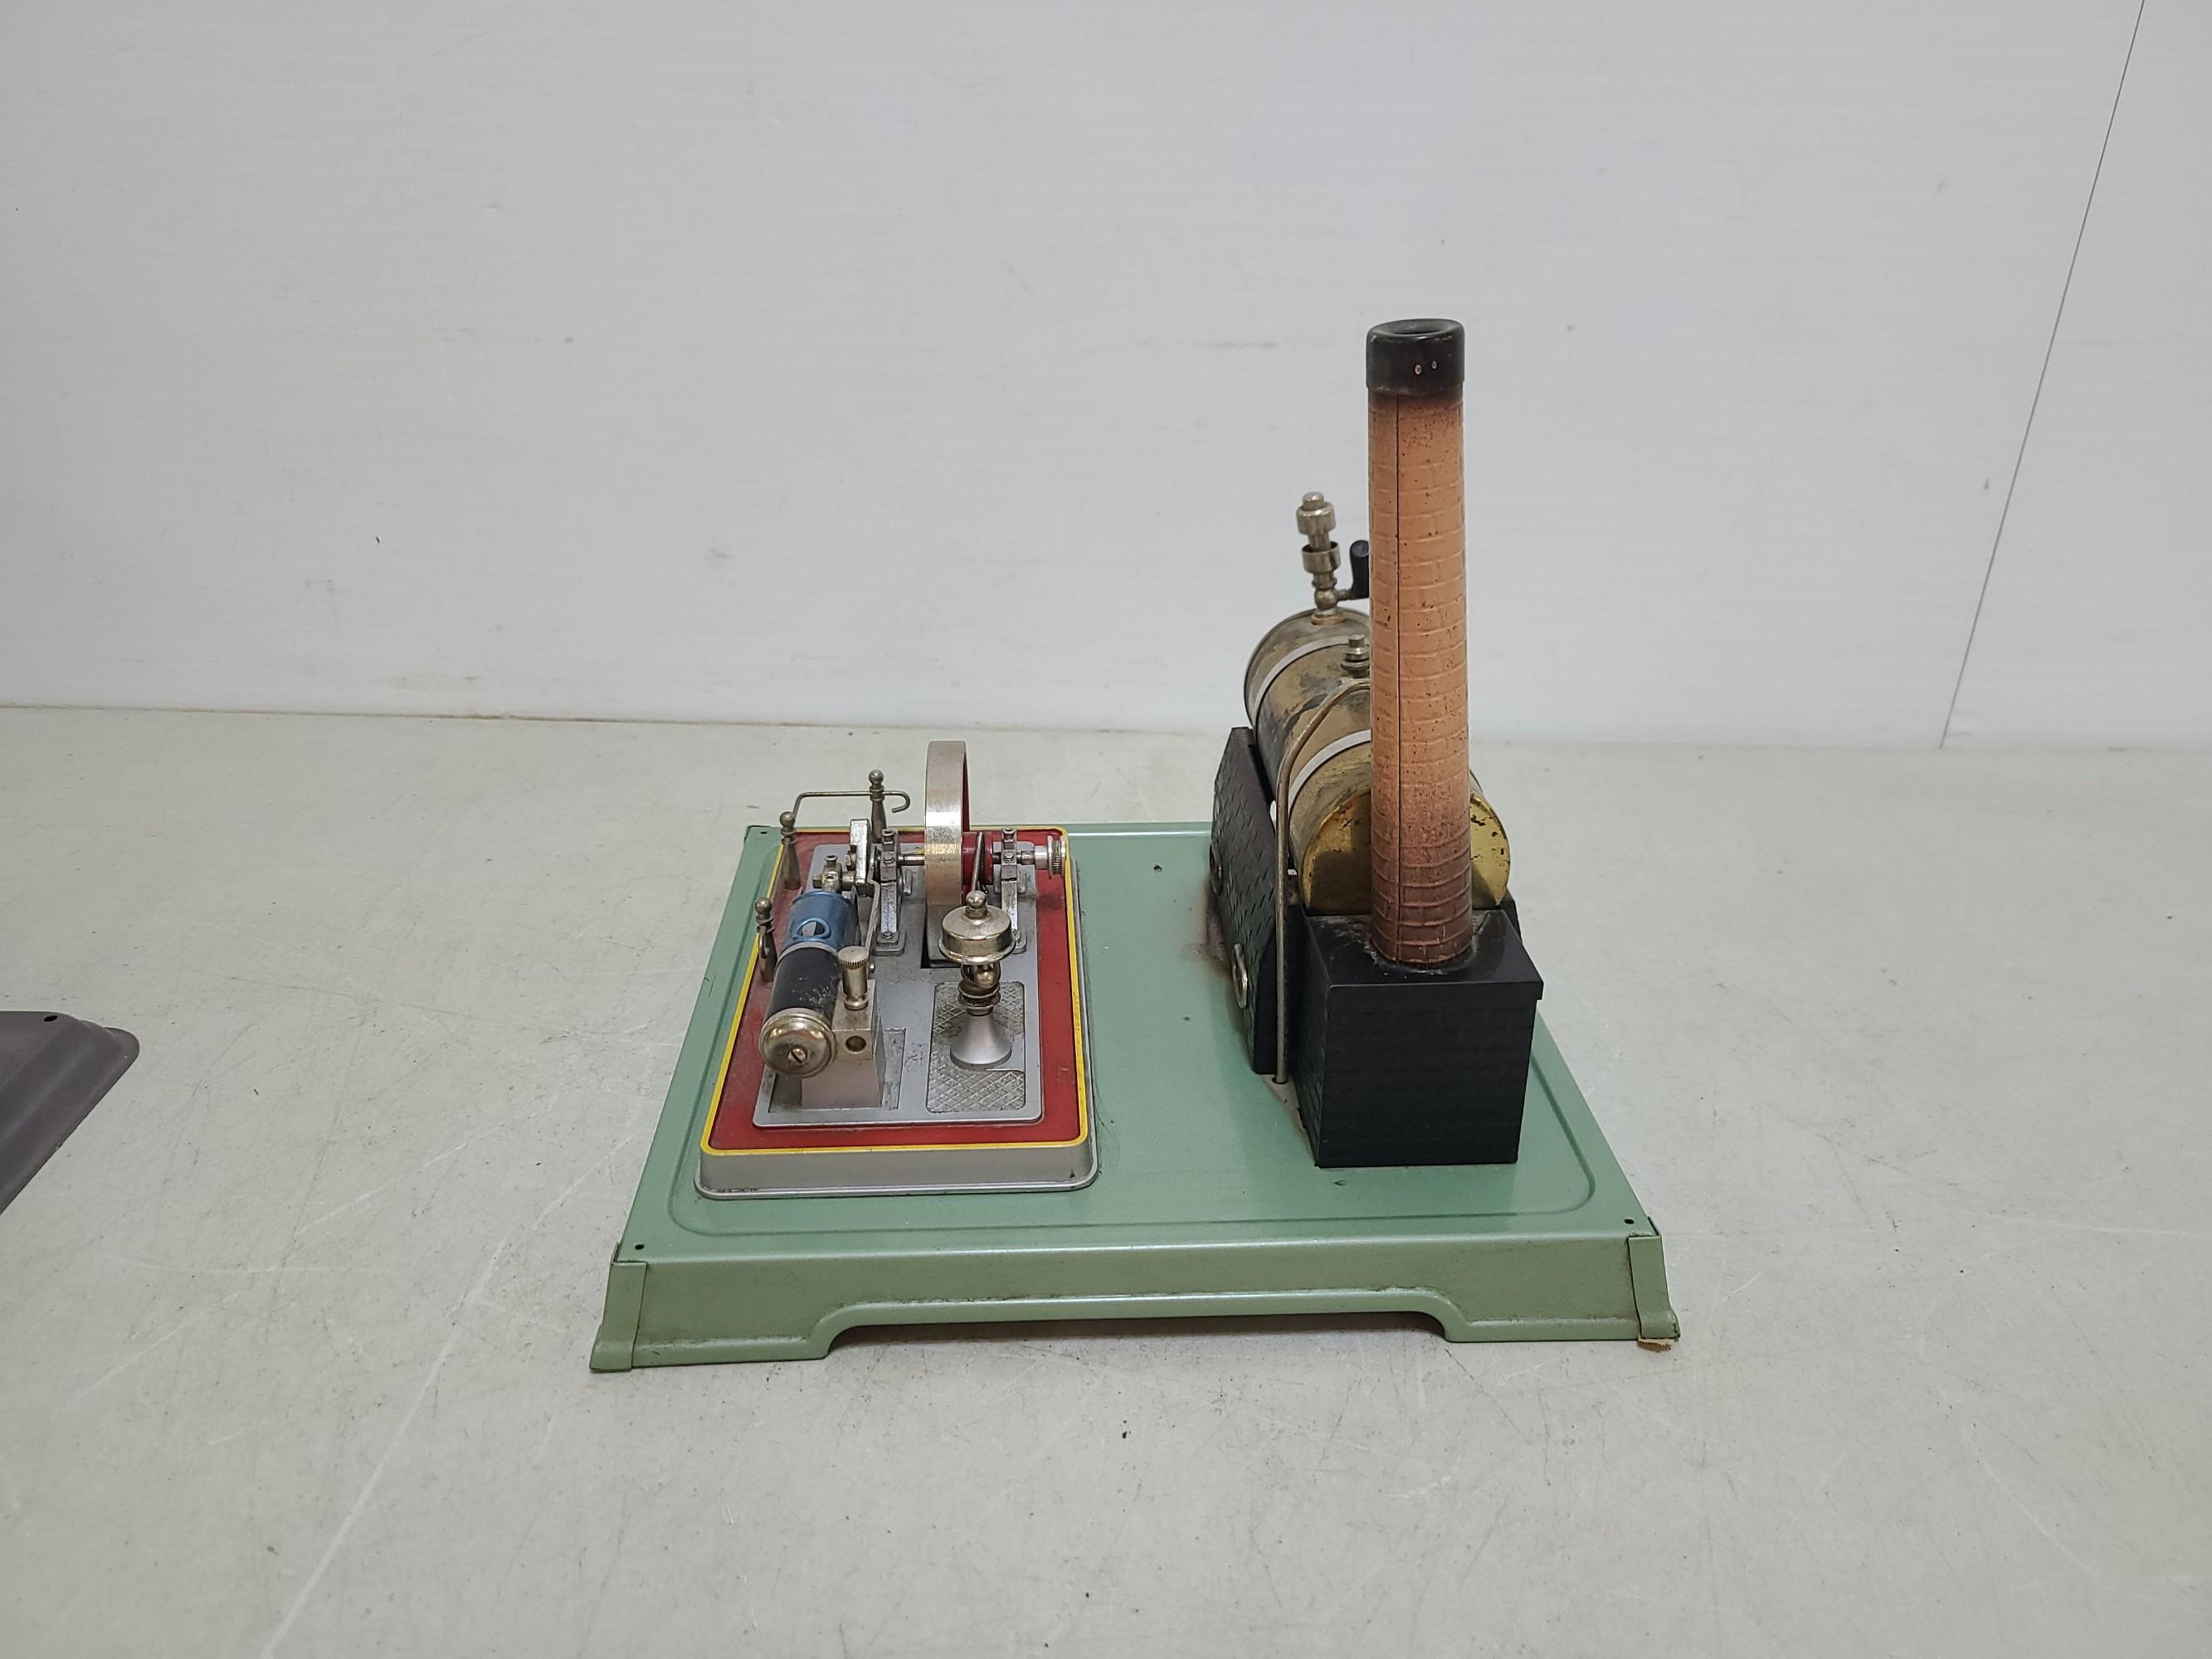 Fleischmann Steam Engine With Shop Accessories Toy